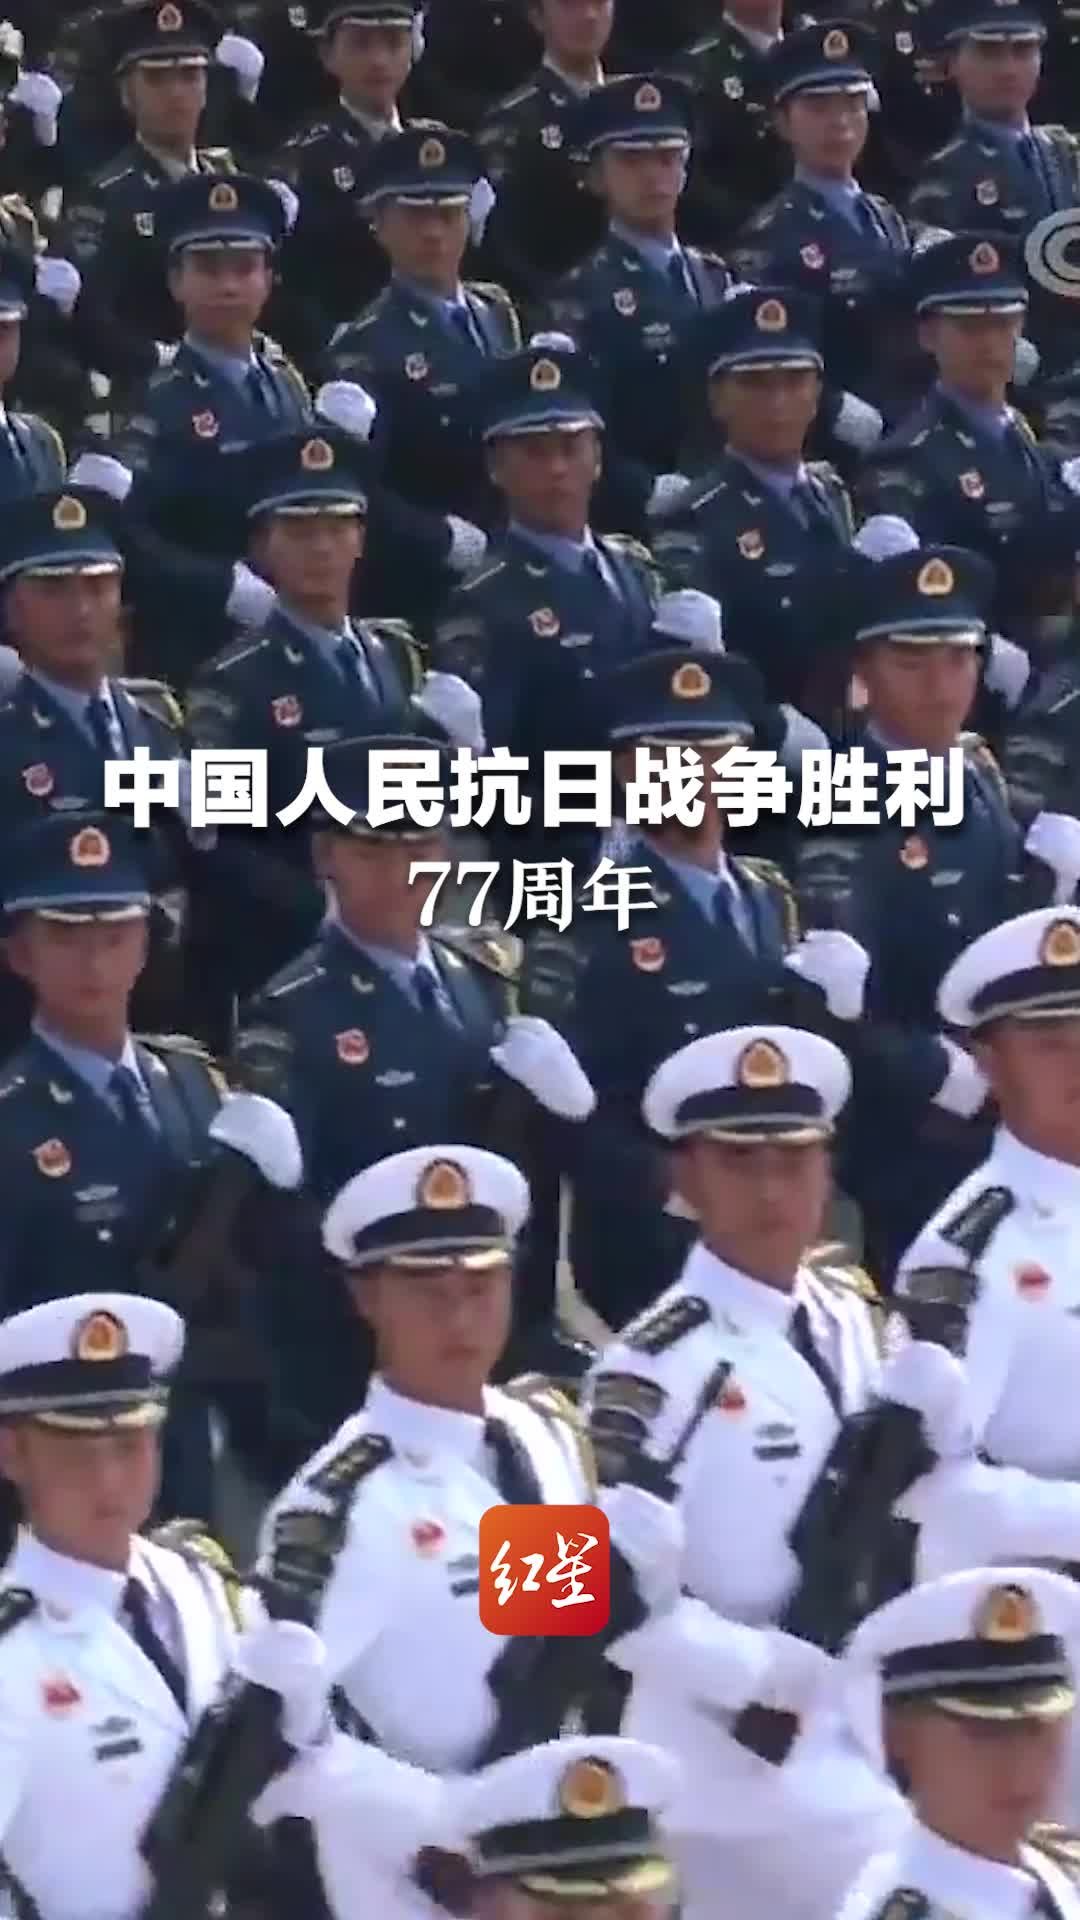 今天是中国人民抗日战争胜利77周年纪念日。铭记伟大胜利！珍惜今日和平